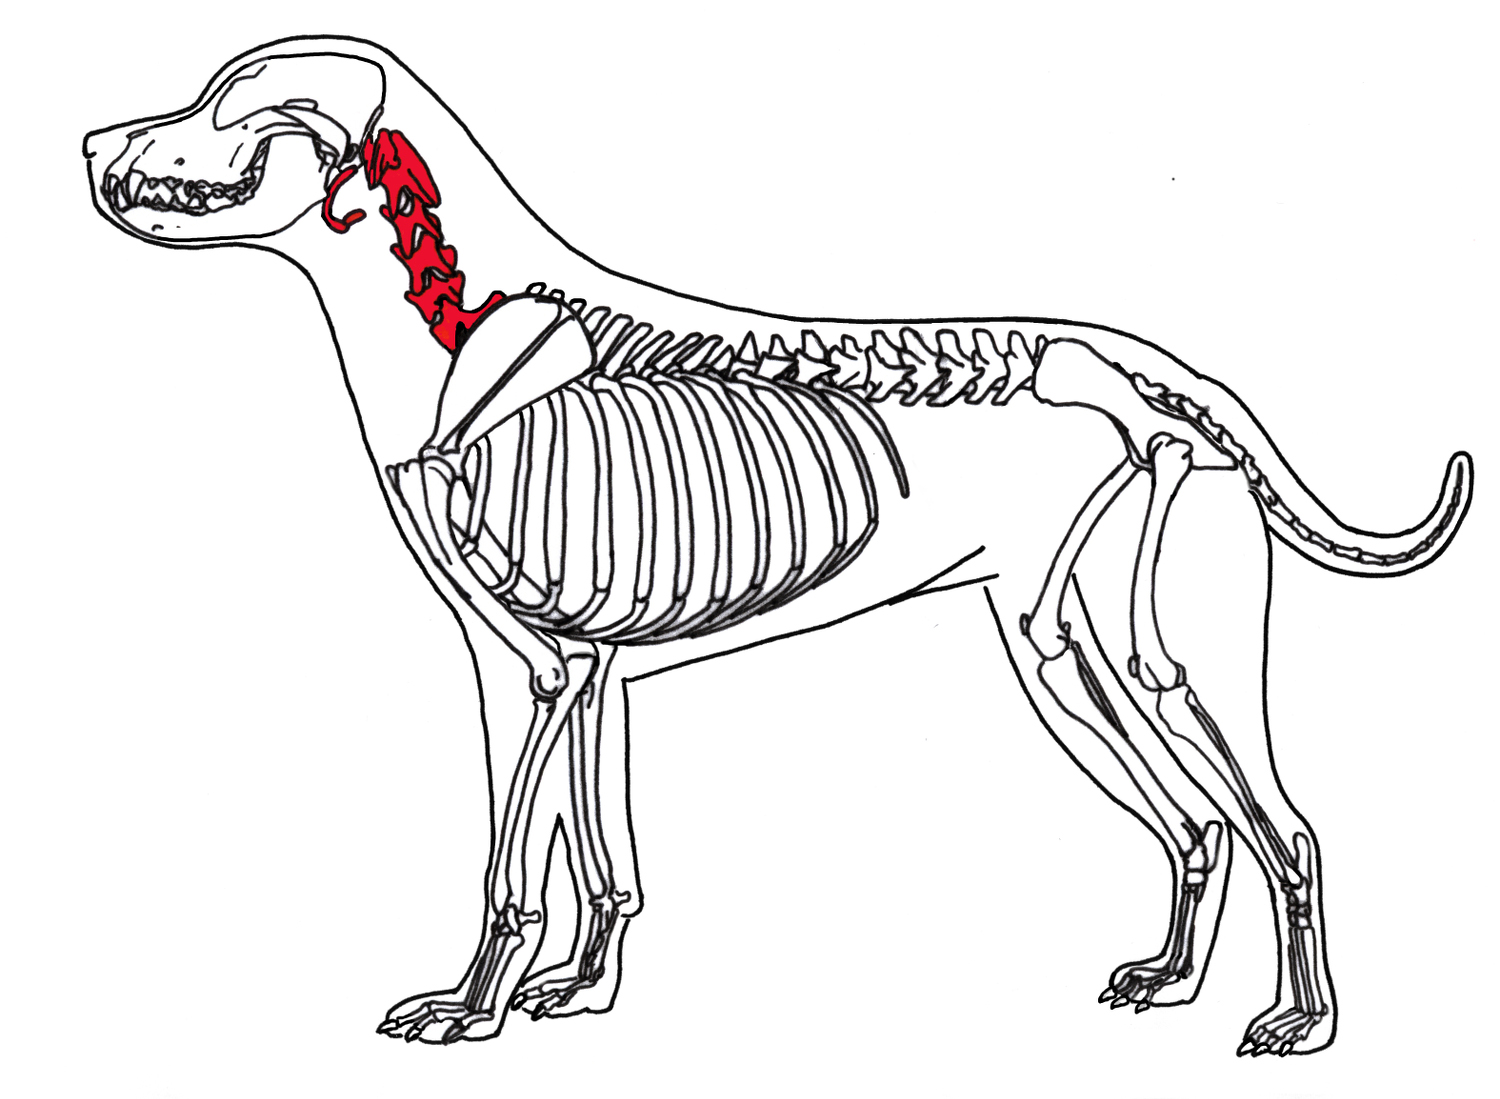 Vertebrados - Esqueleto dos mamíferos - Cachorro